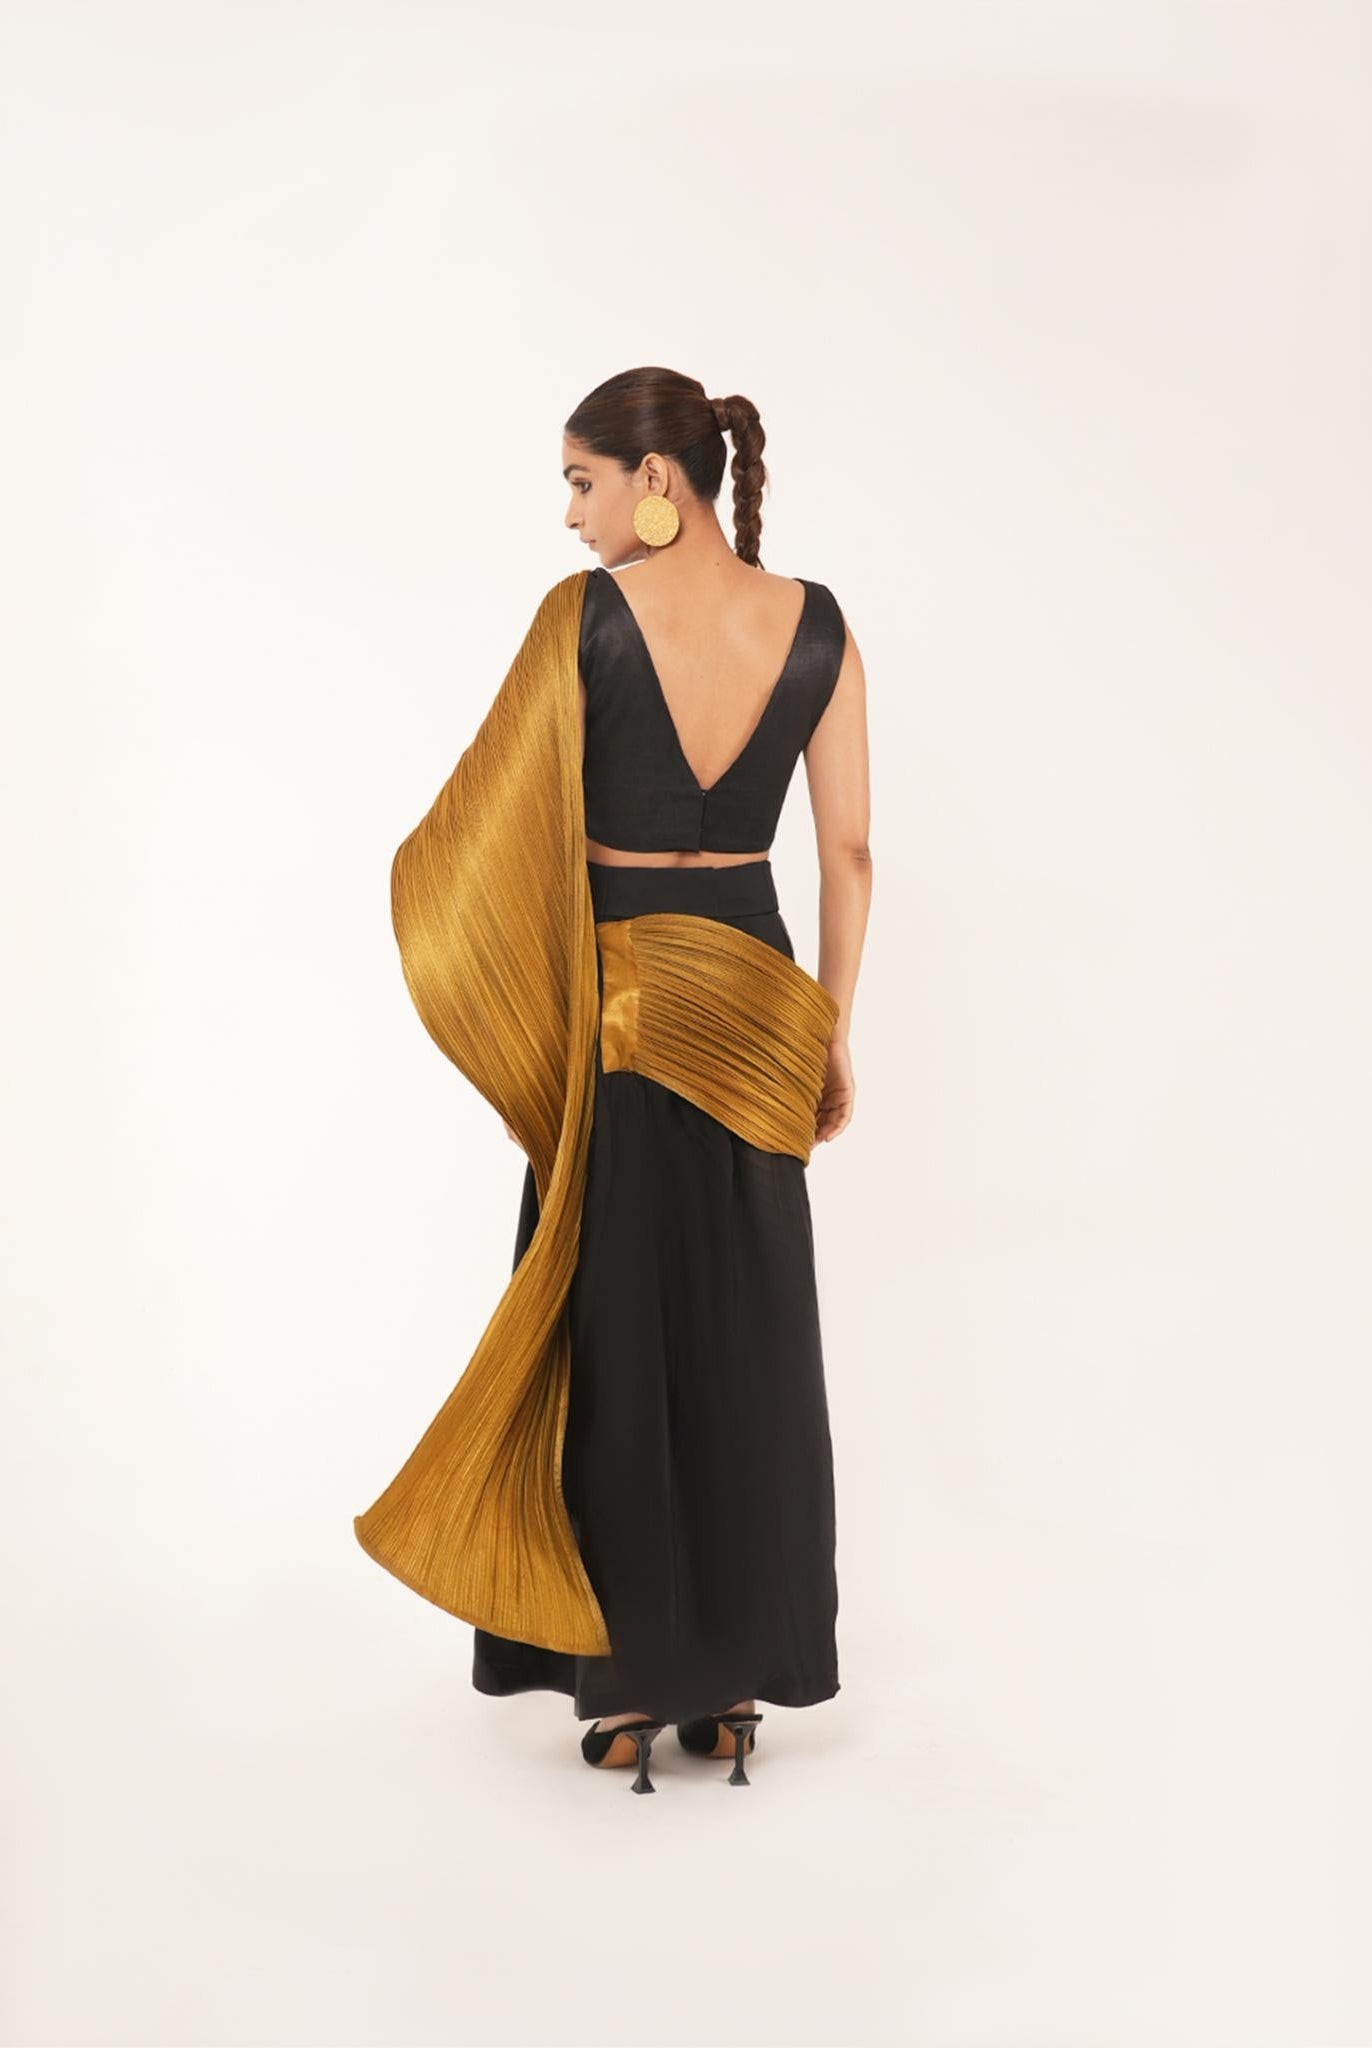 Molten Concept Saree in Black and Gold - CiceroniCo-ord SetShriya Singhi